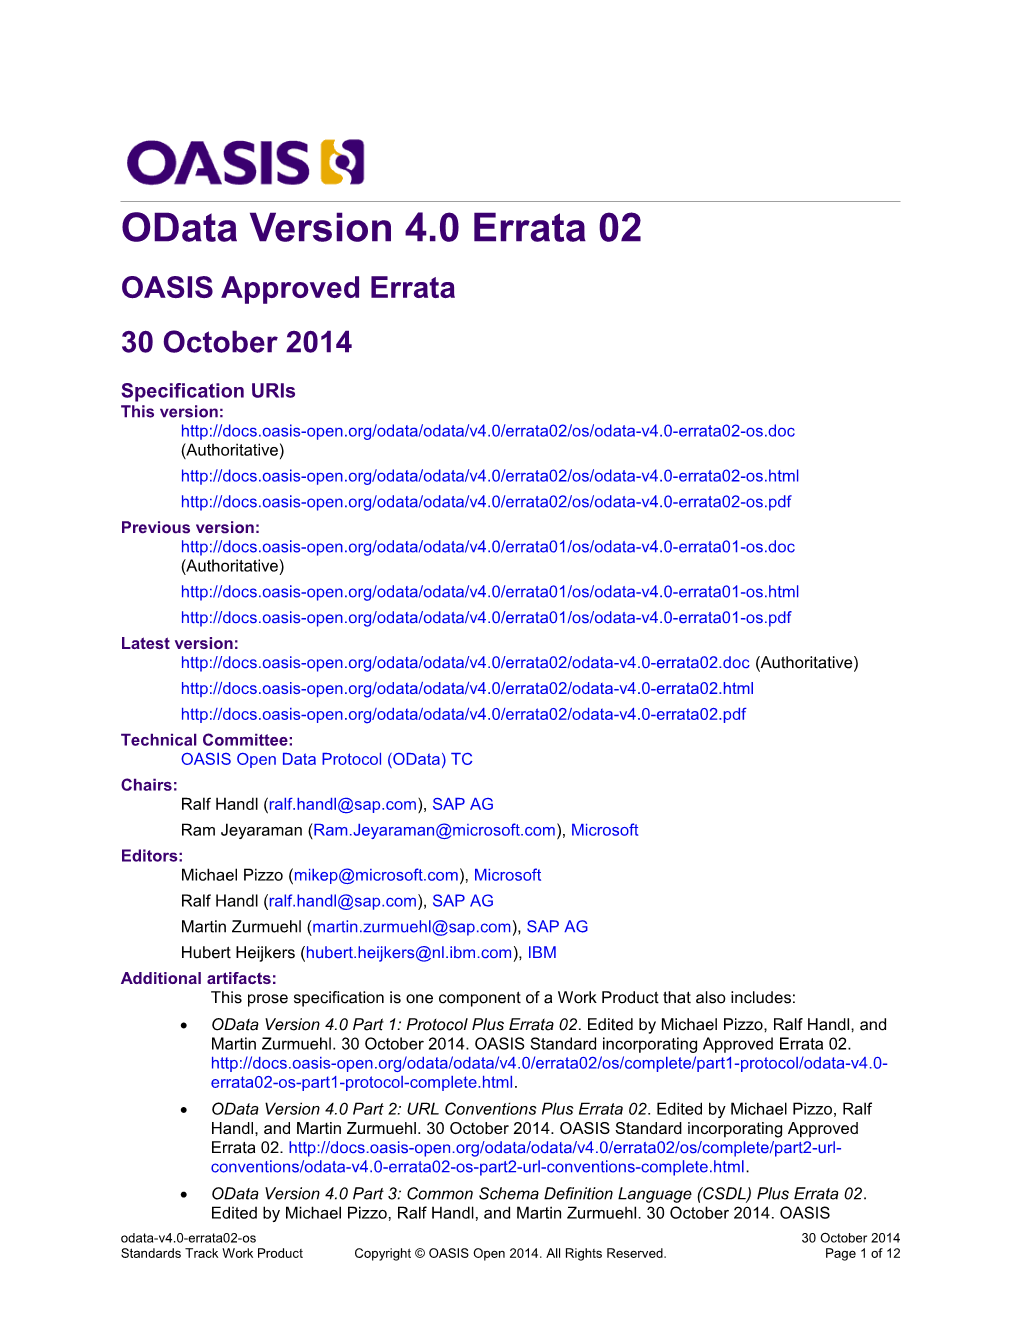 Odata Version 4.0 Errata 02